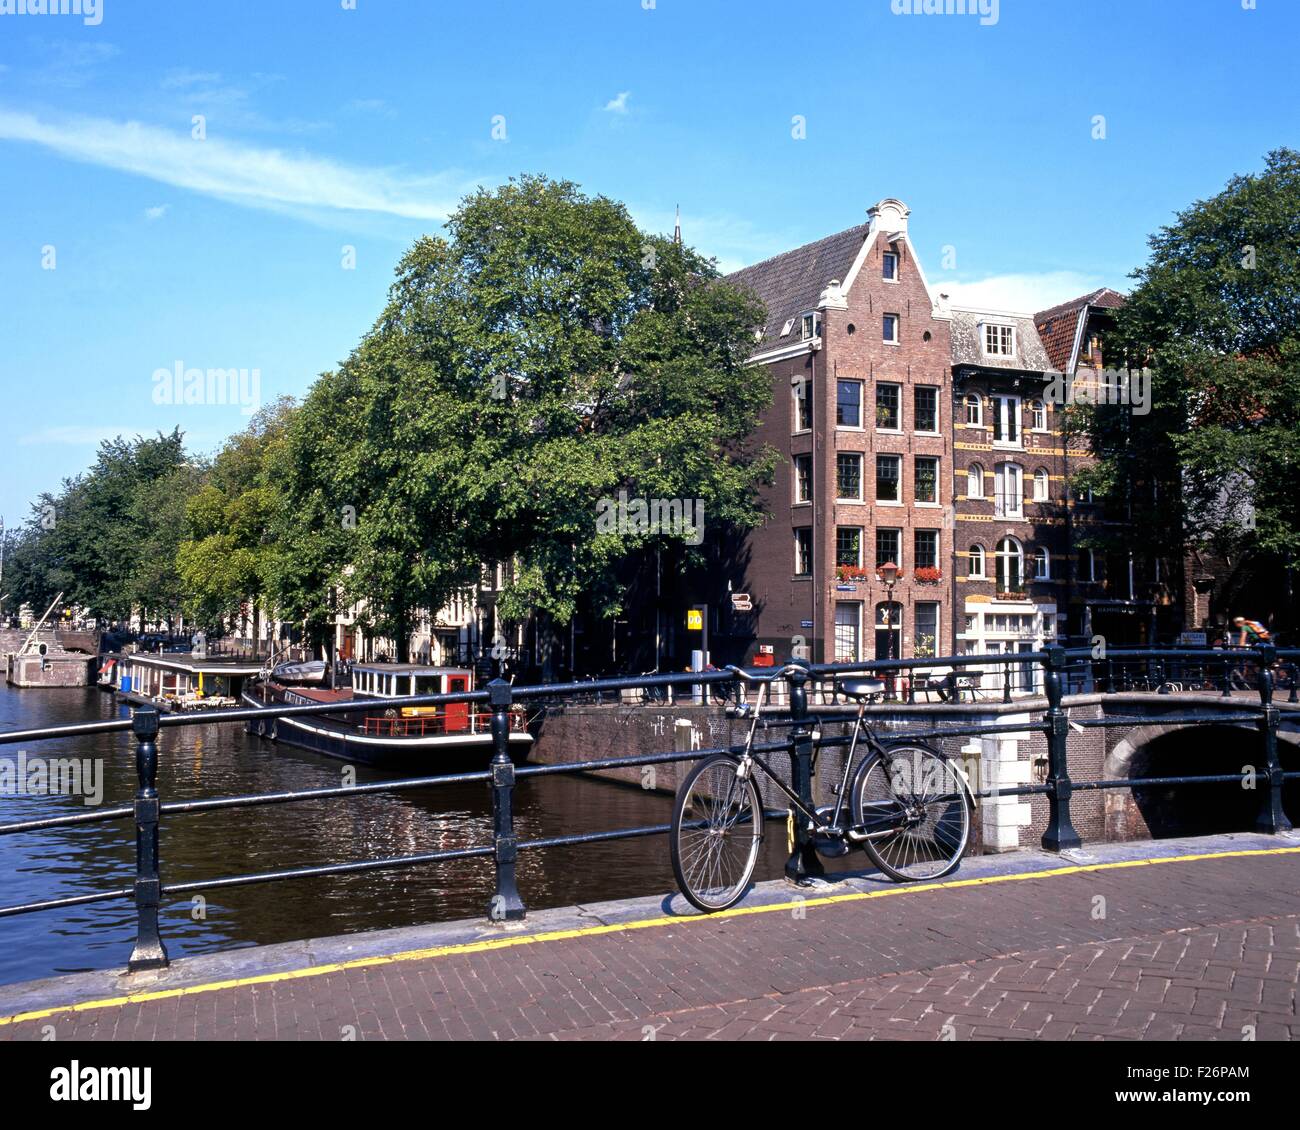 Fahrrad das Geländer gelehnt, auf einem Kanal Brücke, Amsterdam, Holland, Niederlande, Europa. Stockfoto